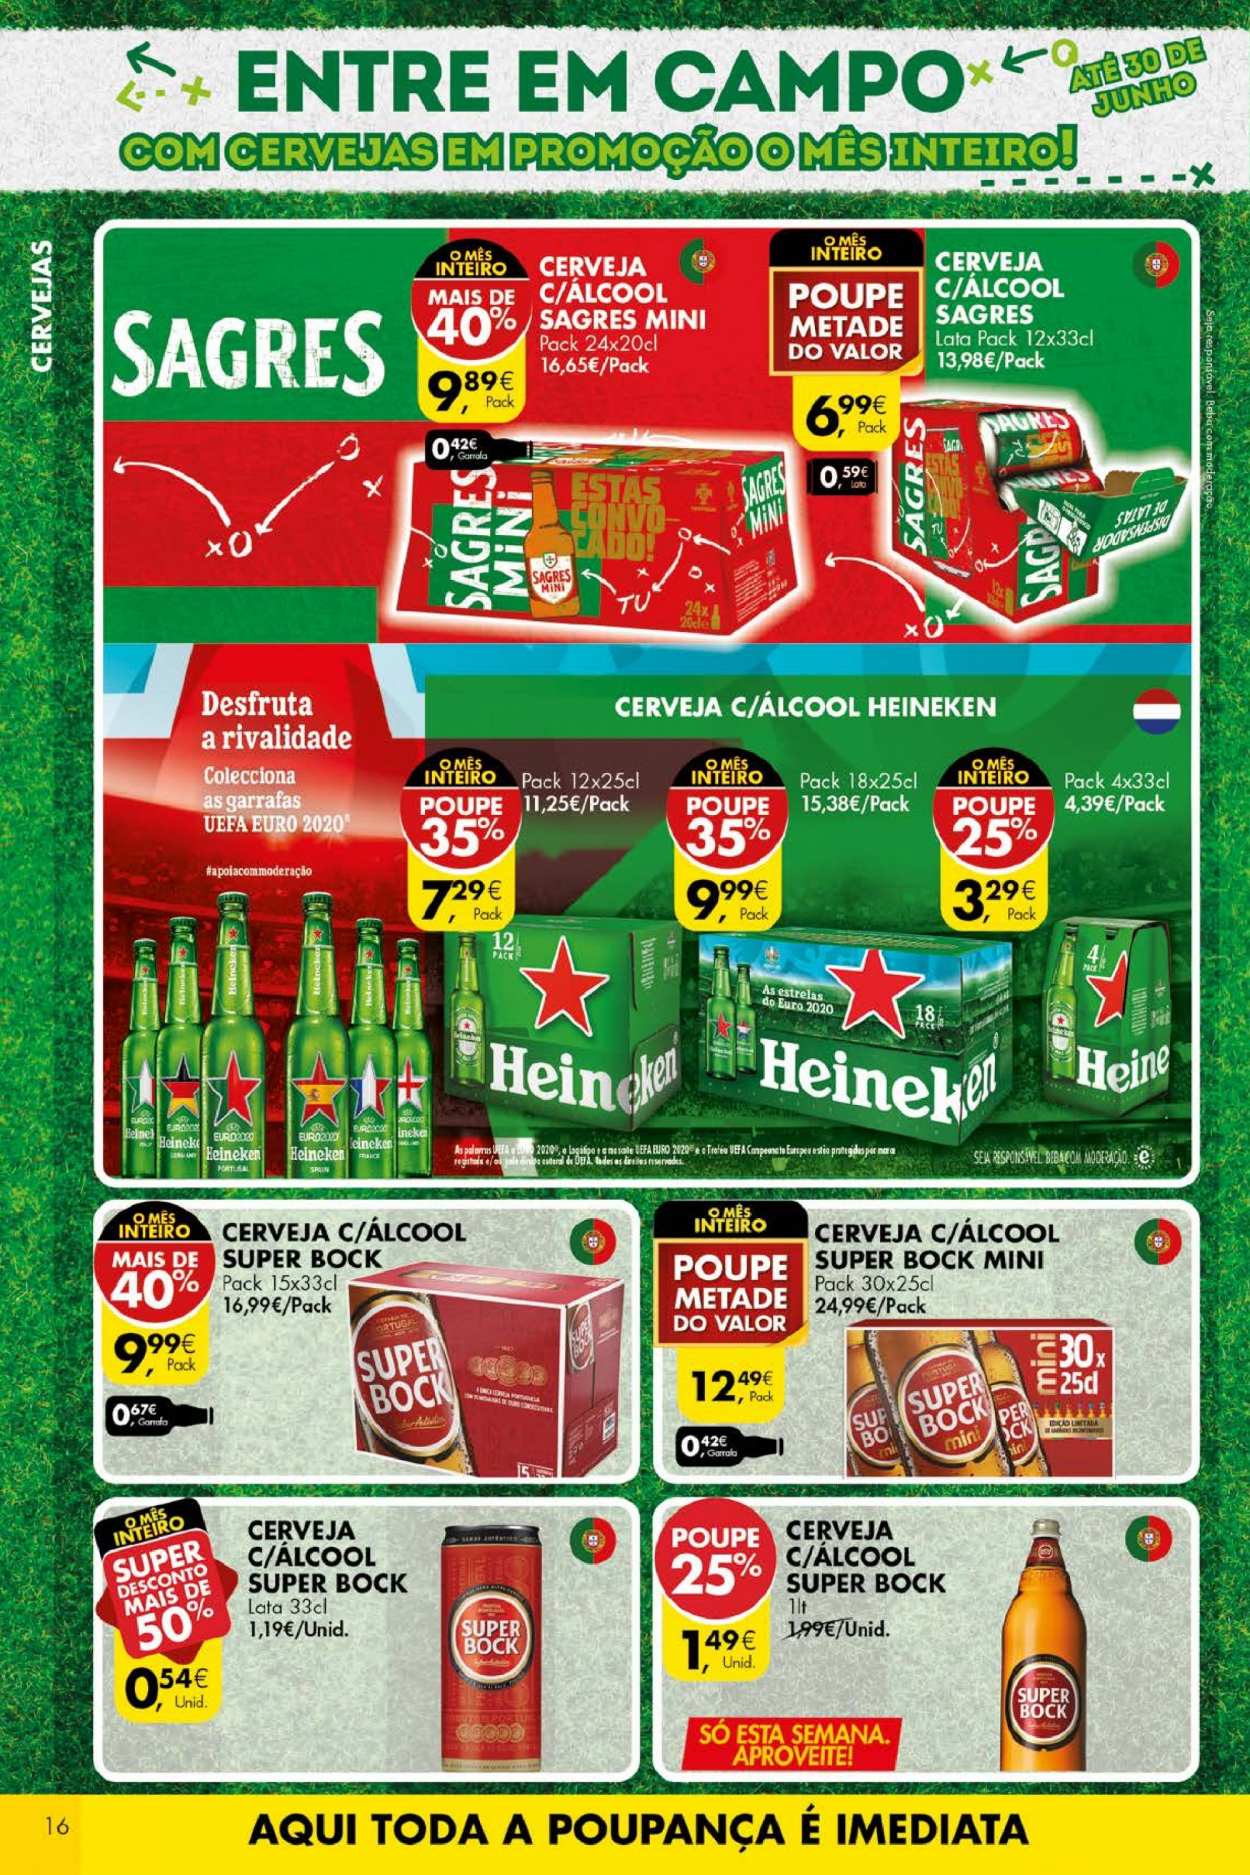 thumbnail - Folheto Pingo Doce - 29.6.2021 - 5.7.2021 - Produtos em promoção - Heineken, Sagres, Super Bock, cerveja. Página 16.